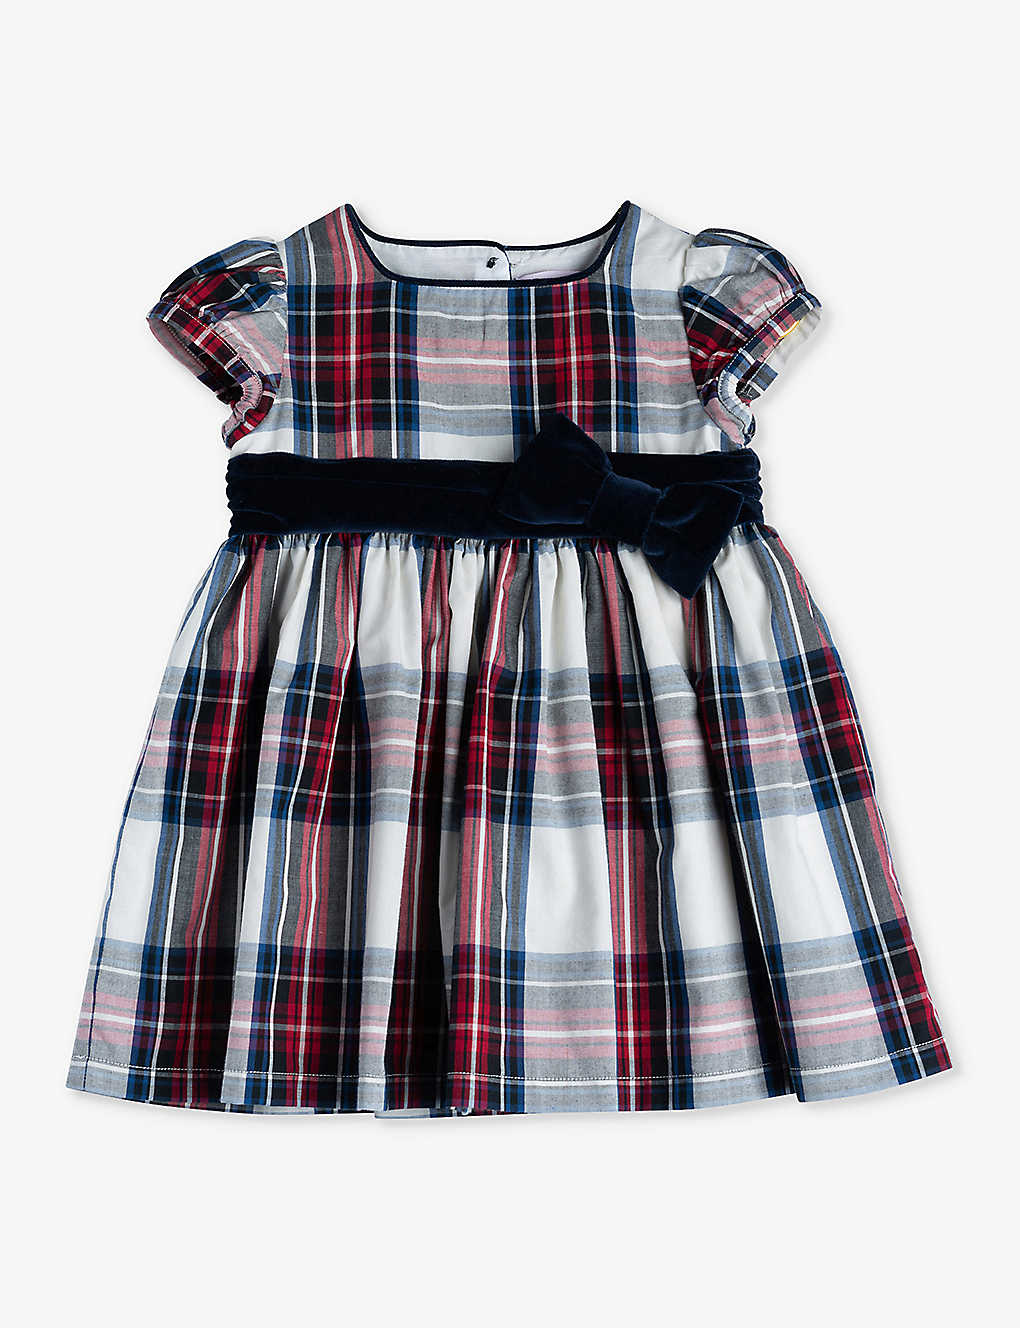 Trotters Babies'  Dress Stewart Tartan Victoria Tartan Cotton Dress 3-24 Months